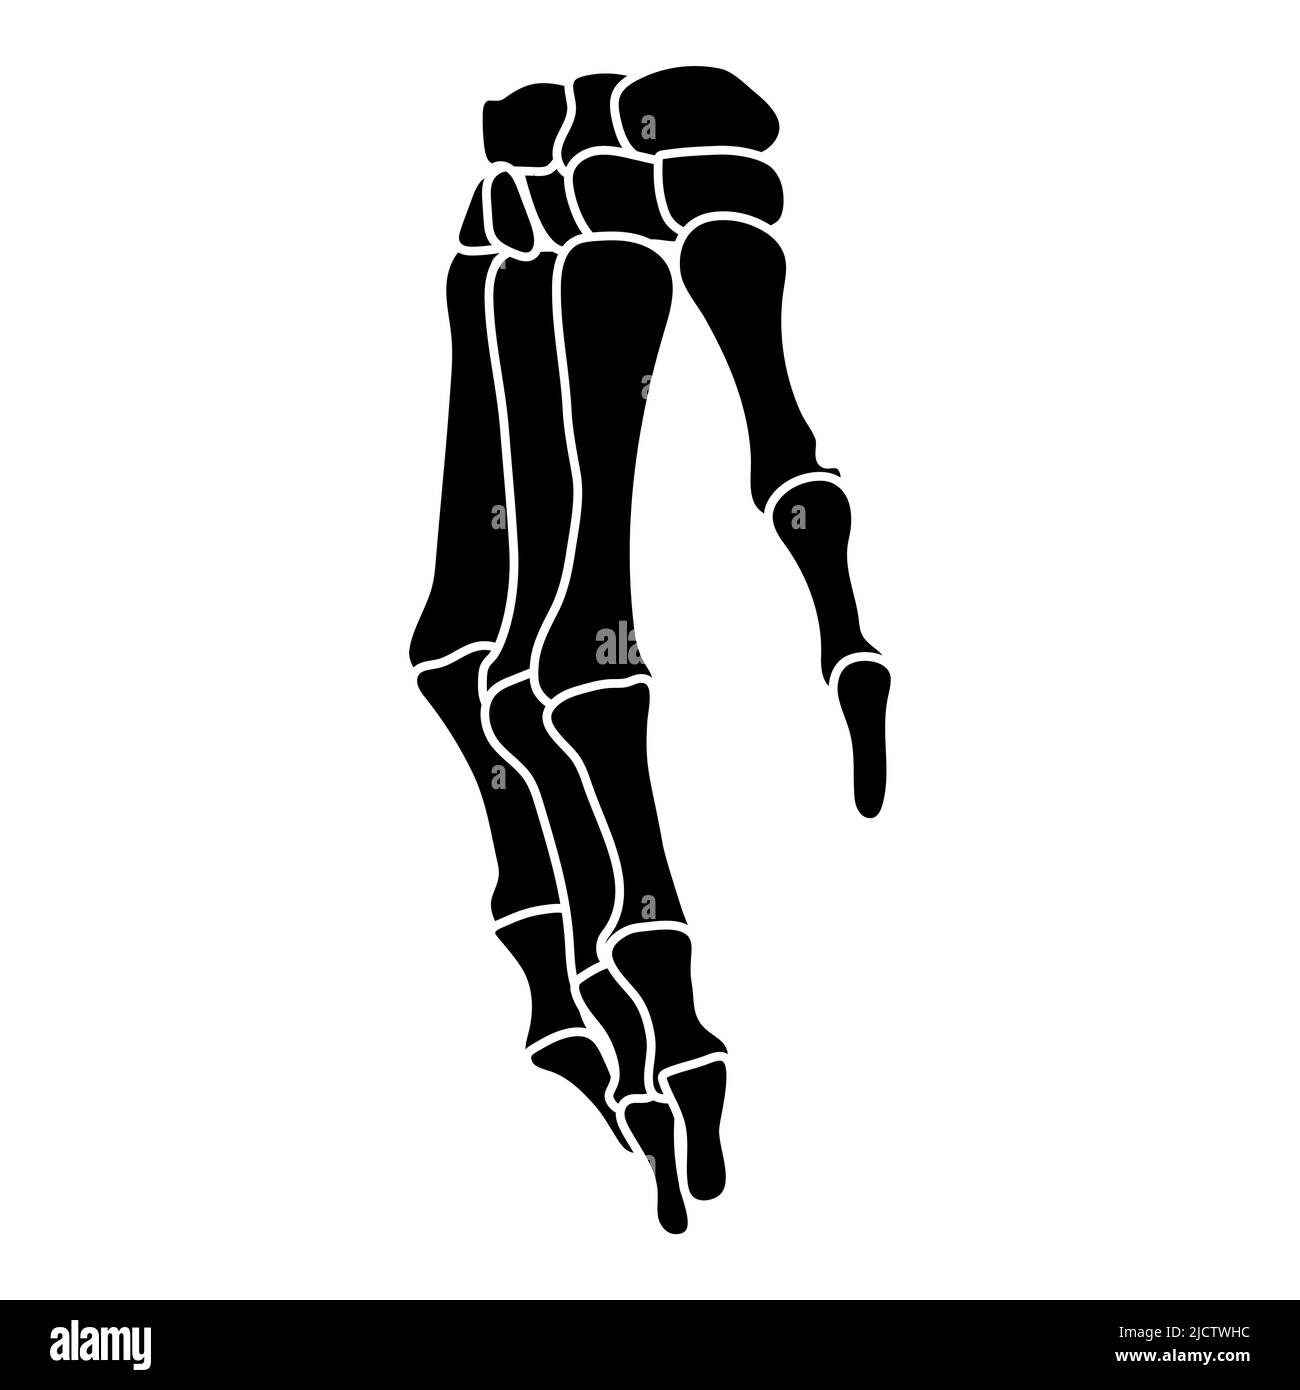 Skelett Hände menschliche Silhouette Körperknochen - Karpale, Handgelenk, Metacarpale, Pals, Vorderseite Vorderansicht flache schwarze Farbe Konzept Vektor Illustration der Anatomie auf weißem Hintergrund isoliert Stock Vektor